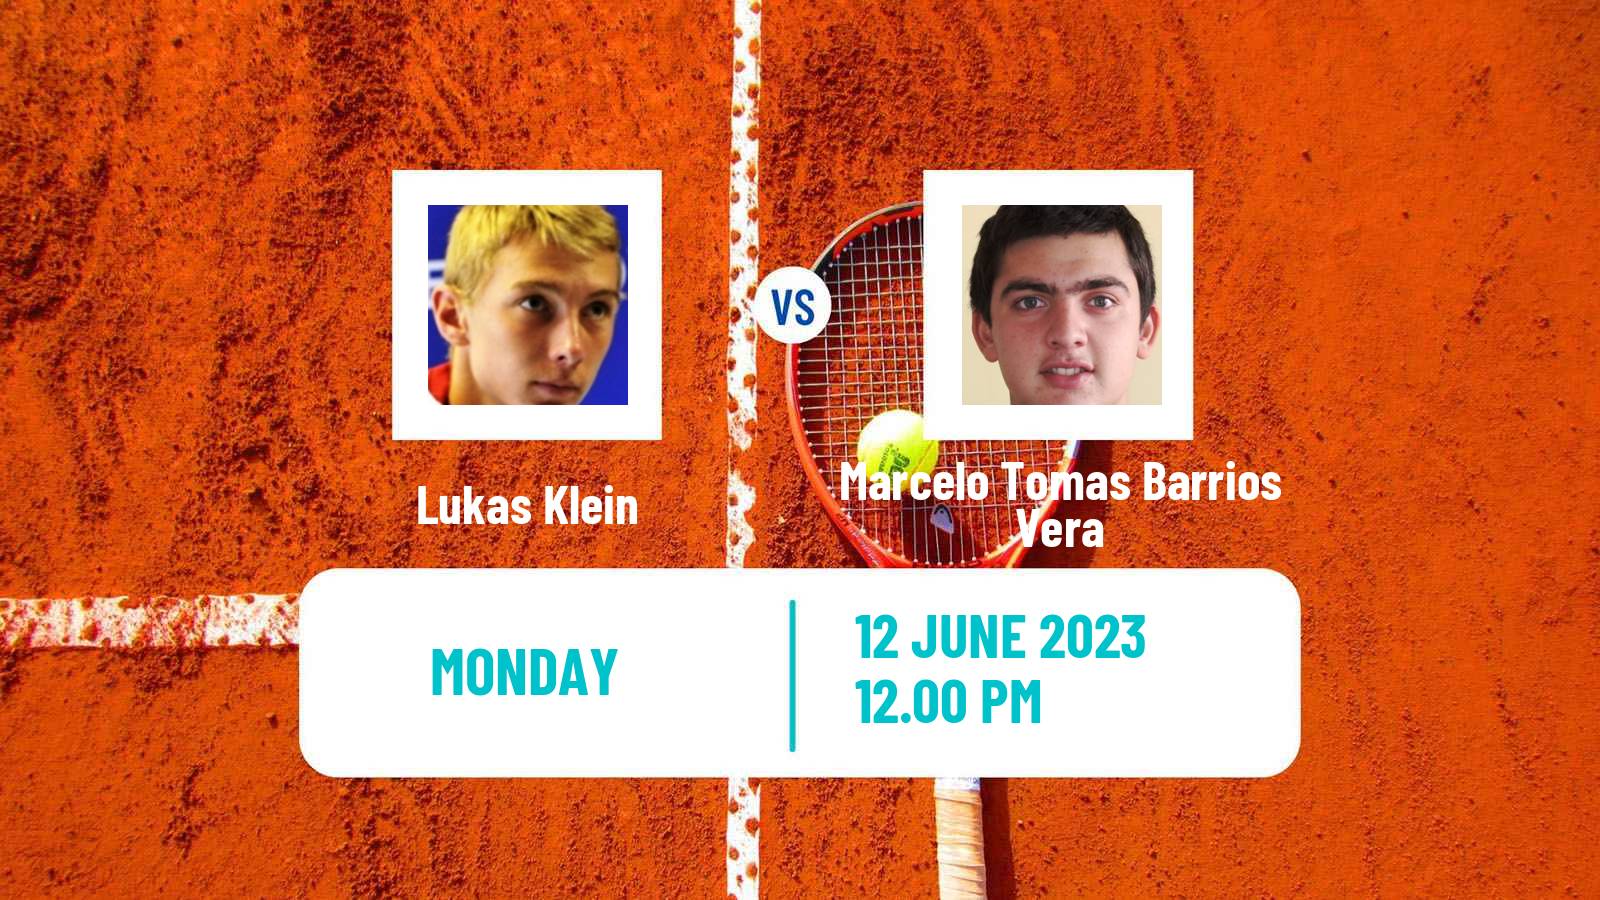 Tennis Bratislava Challenger Men Lukas Klein - Marcelo Tomas Barrios Vera